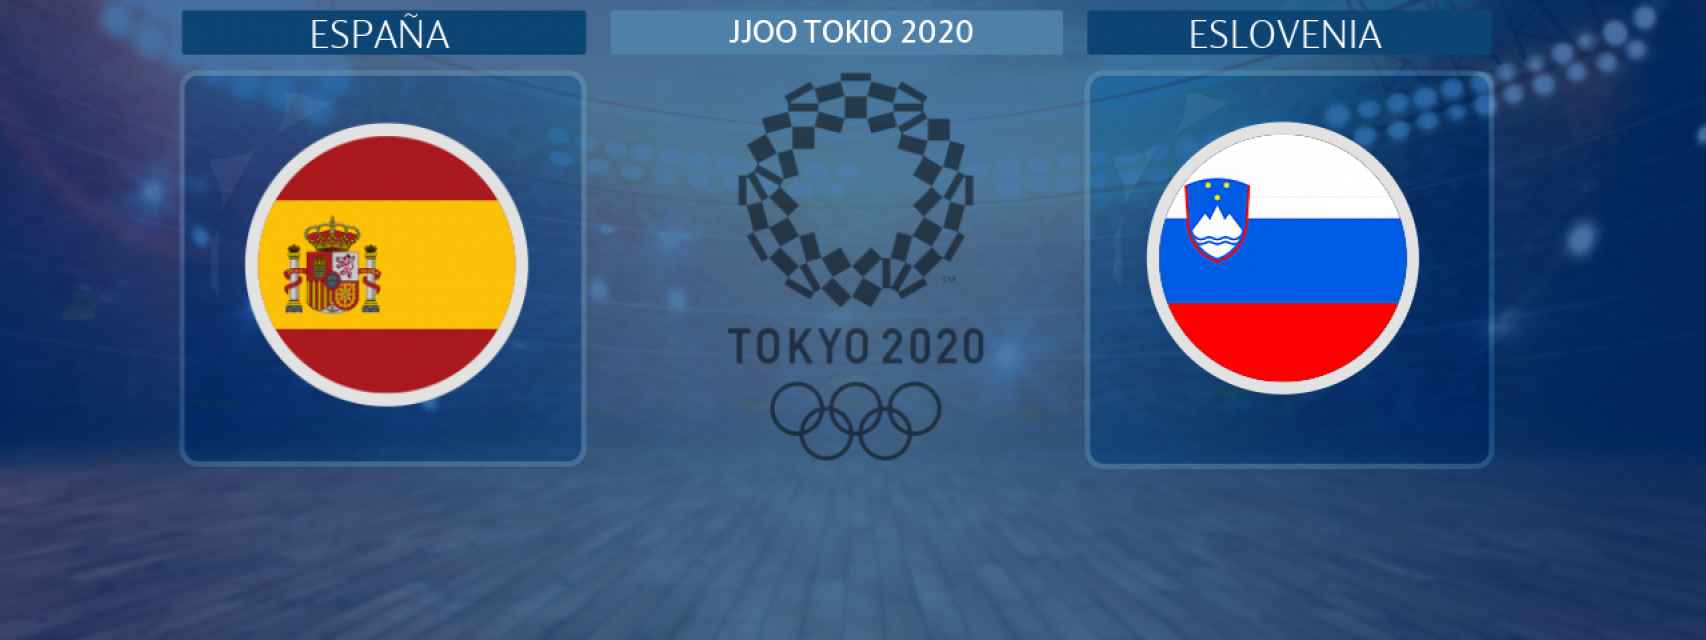 España - Eslovenia, partido de baloncesto masculino de los JJOO Tokio 2020